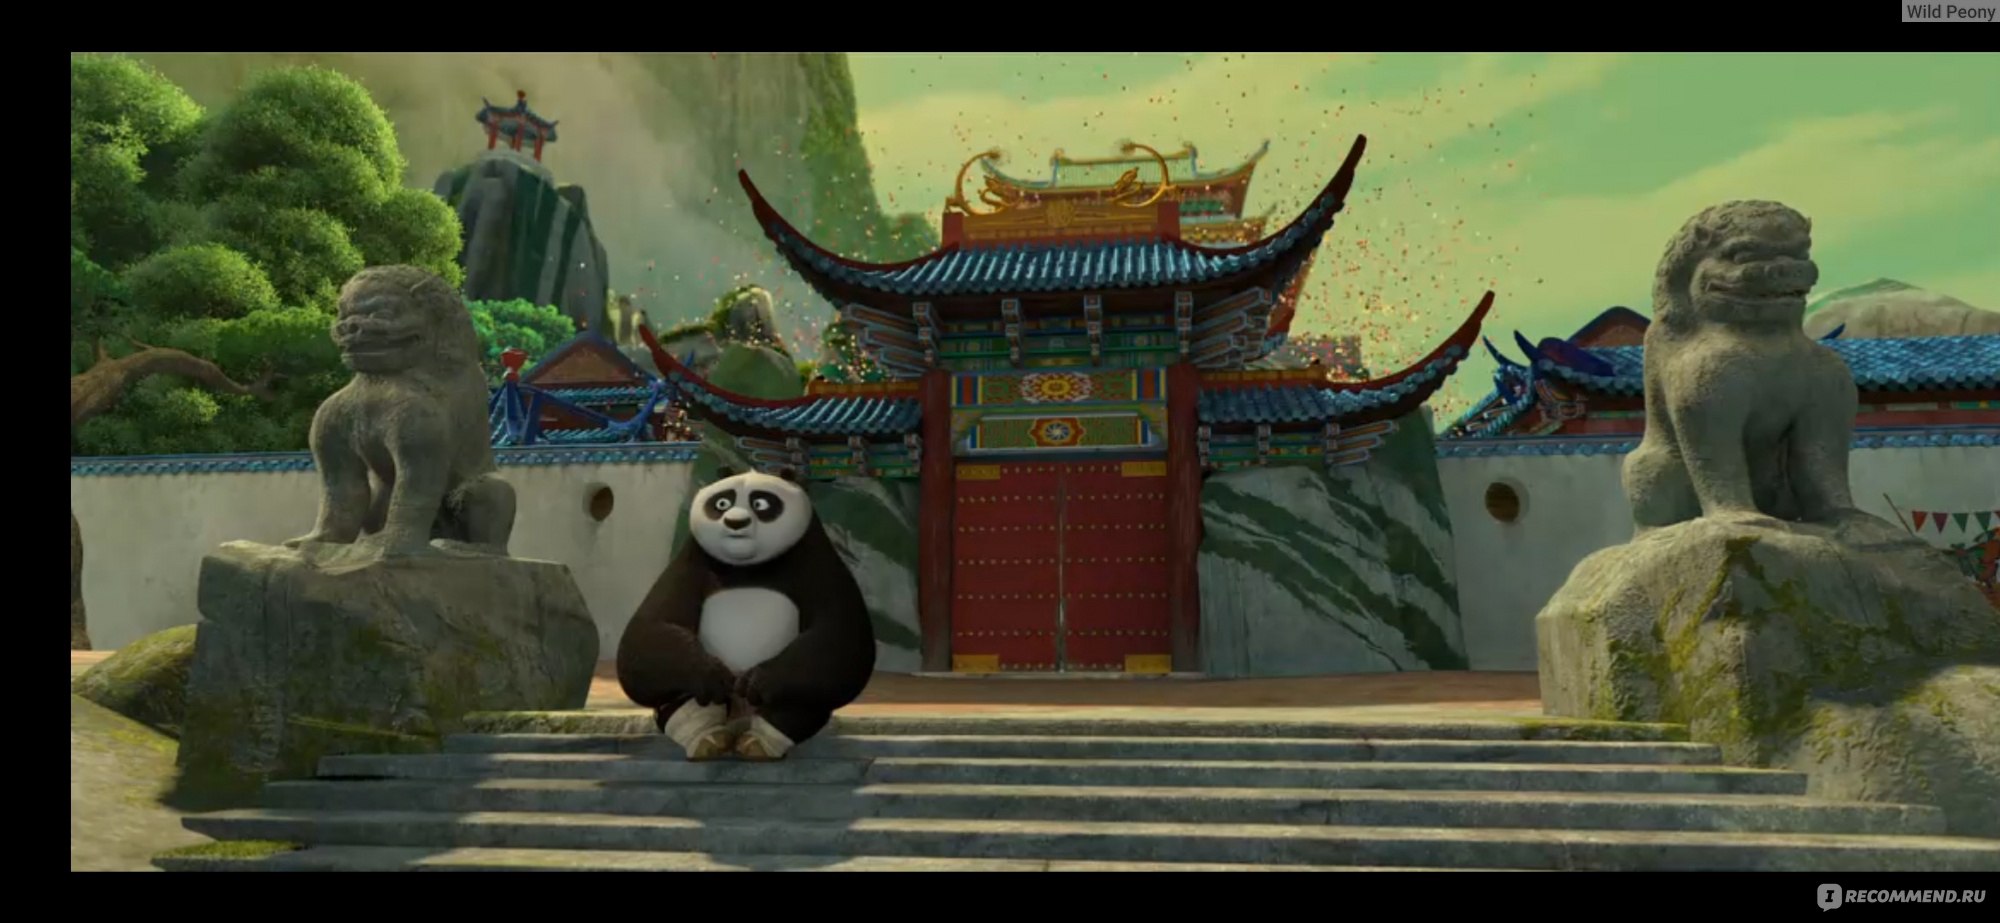 Будет ли кунфу панда 5. Нефритовый дворец кунг фу Панда. Нефритовый дворец из кунг фу Панда. Нефритовый храм кунг фу Панда.